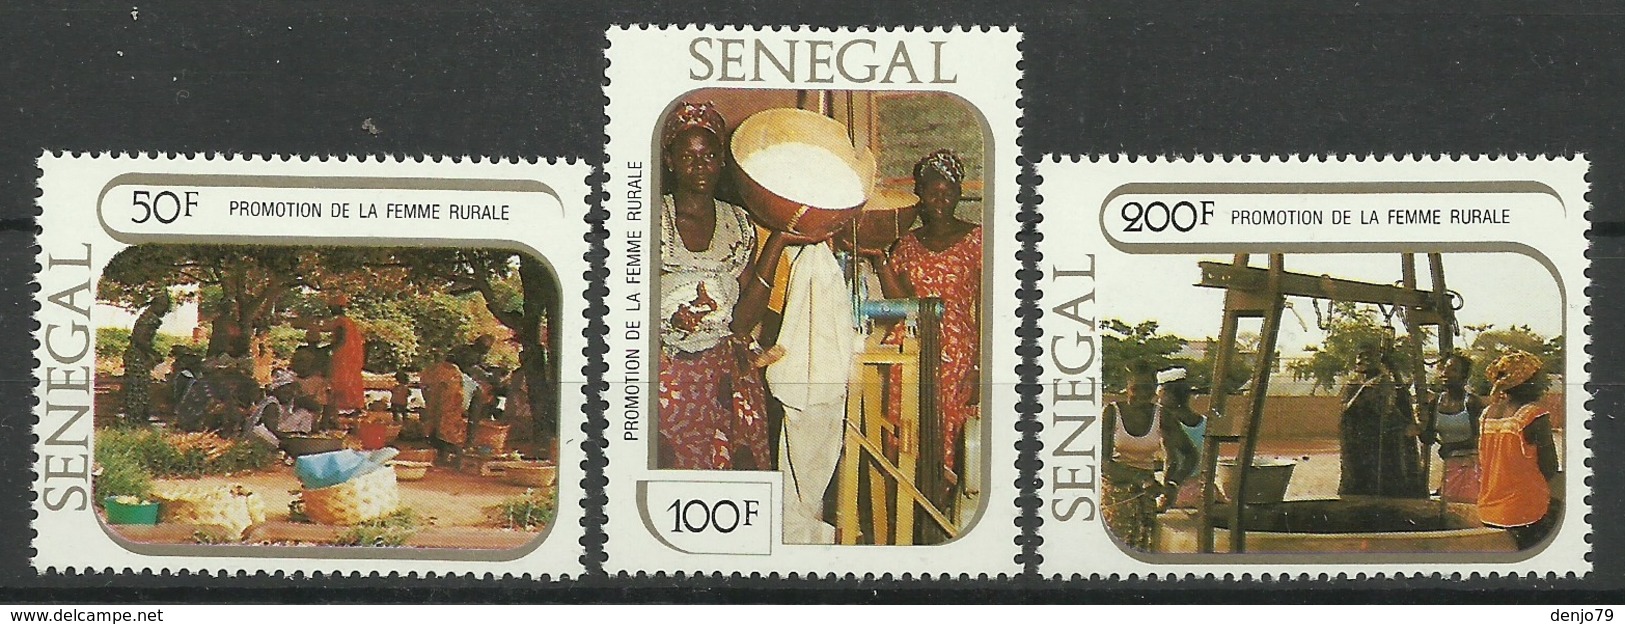 SENEGAL 1980 PROMOTION OF RURAL WOMEN SET MNH - Senegal (1960-...)